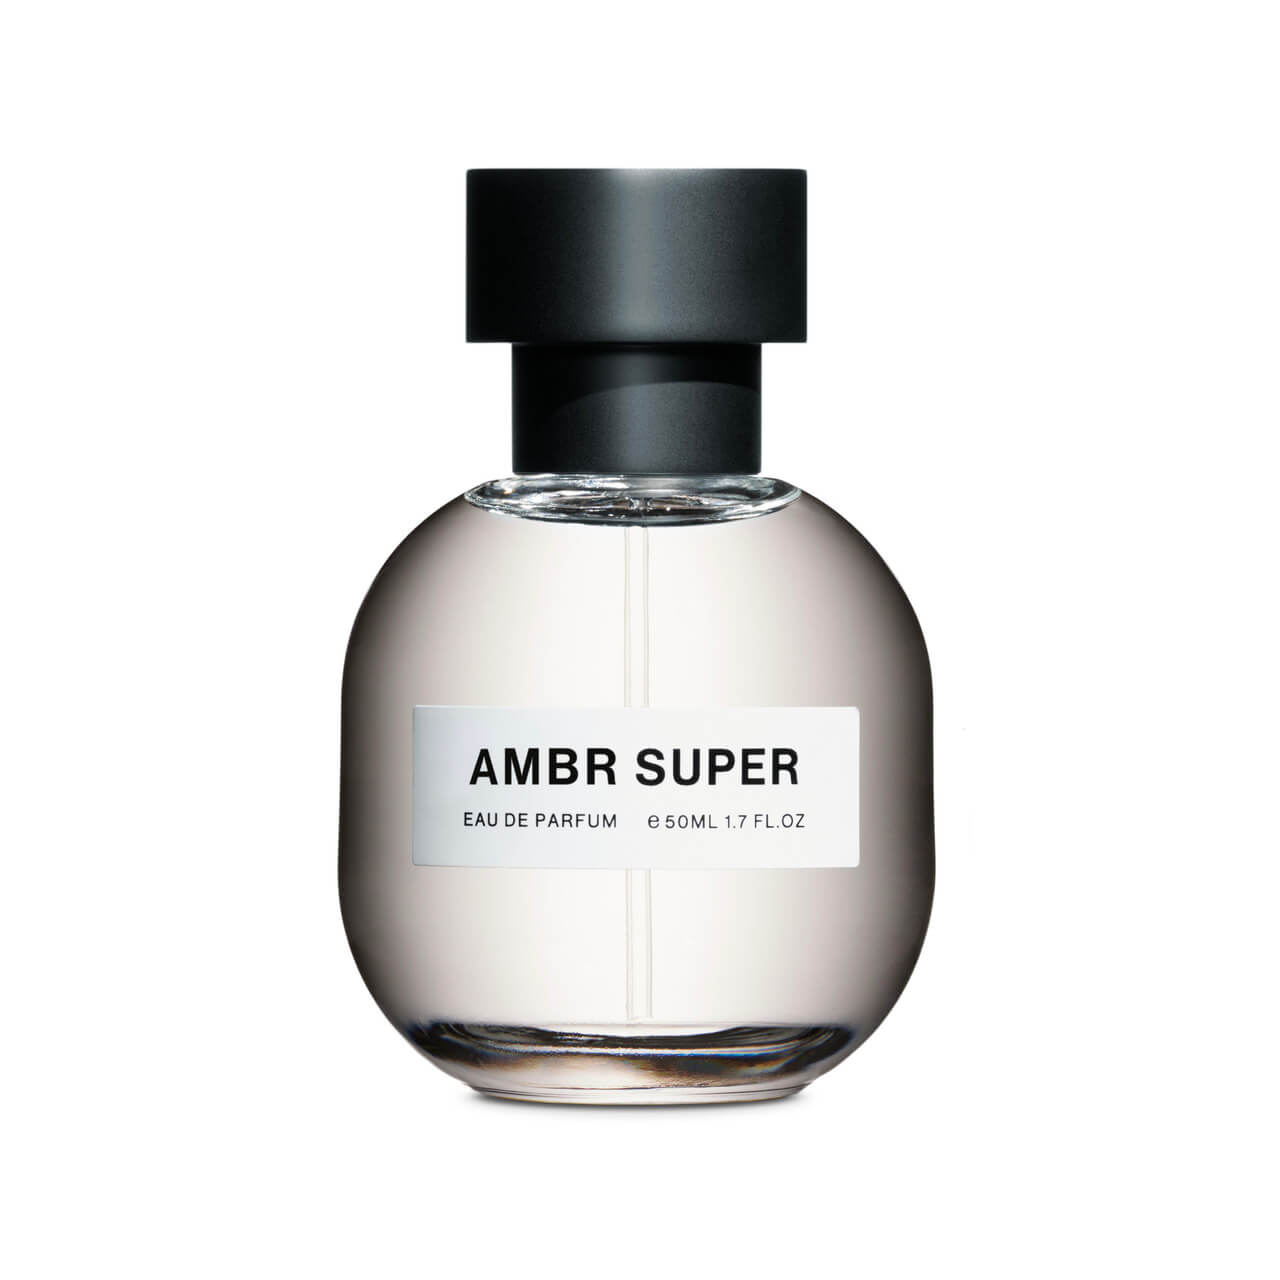 AMBR SUPER